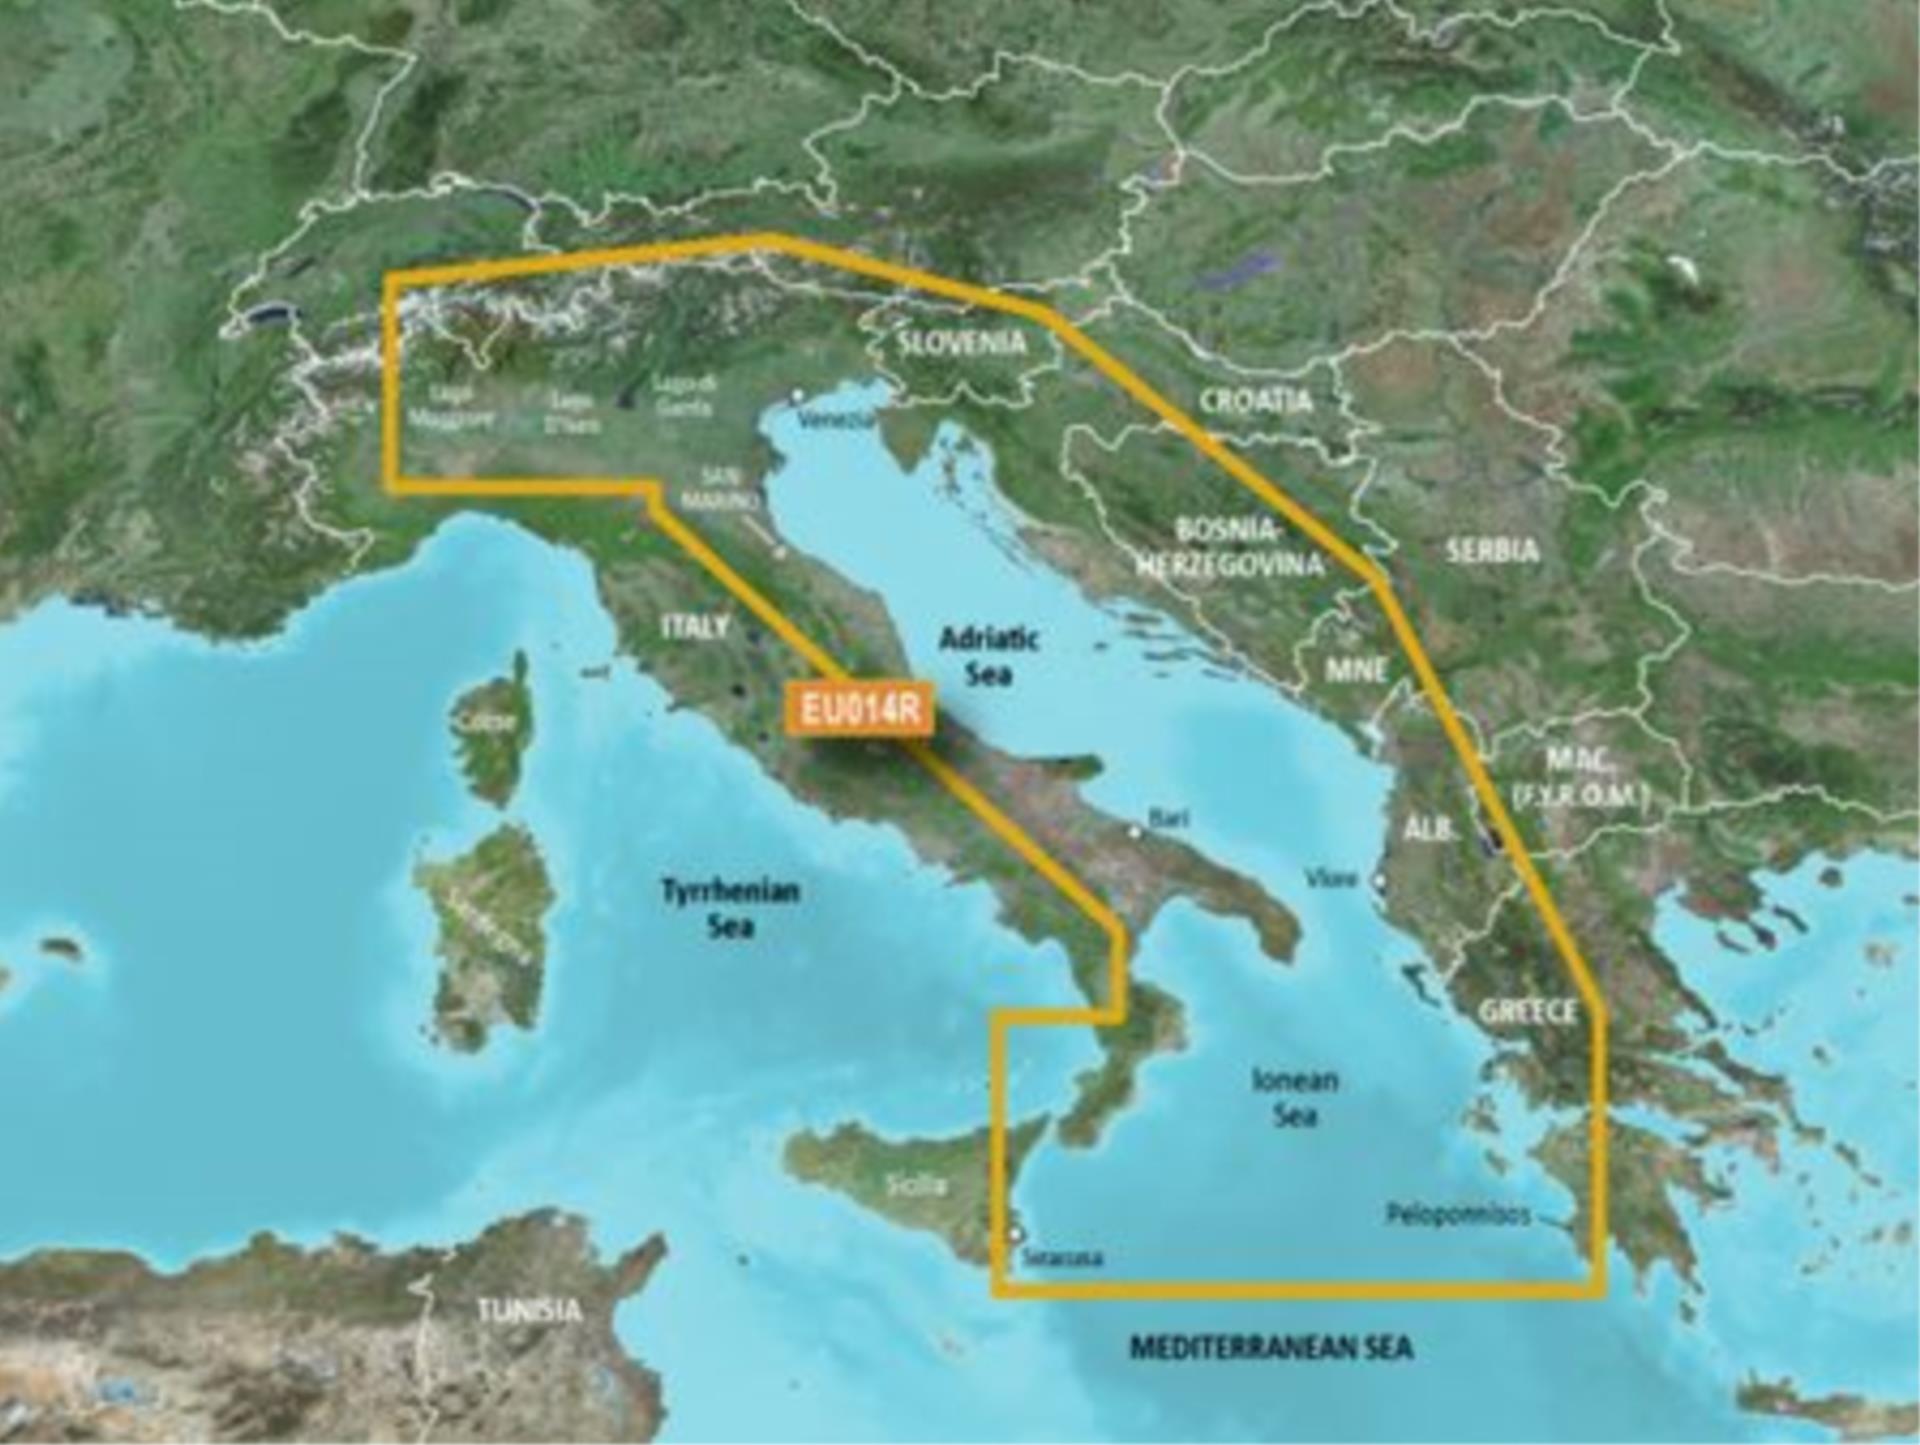 Garmin G3 EU014R Italy, Adriatic Sea